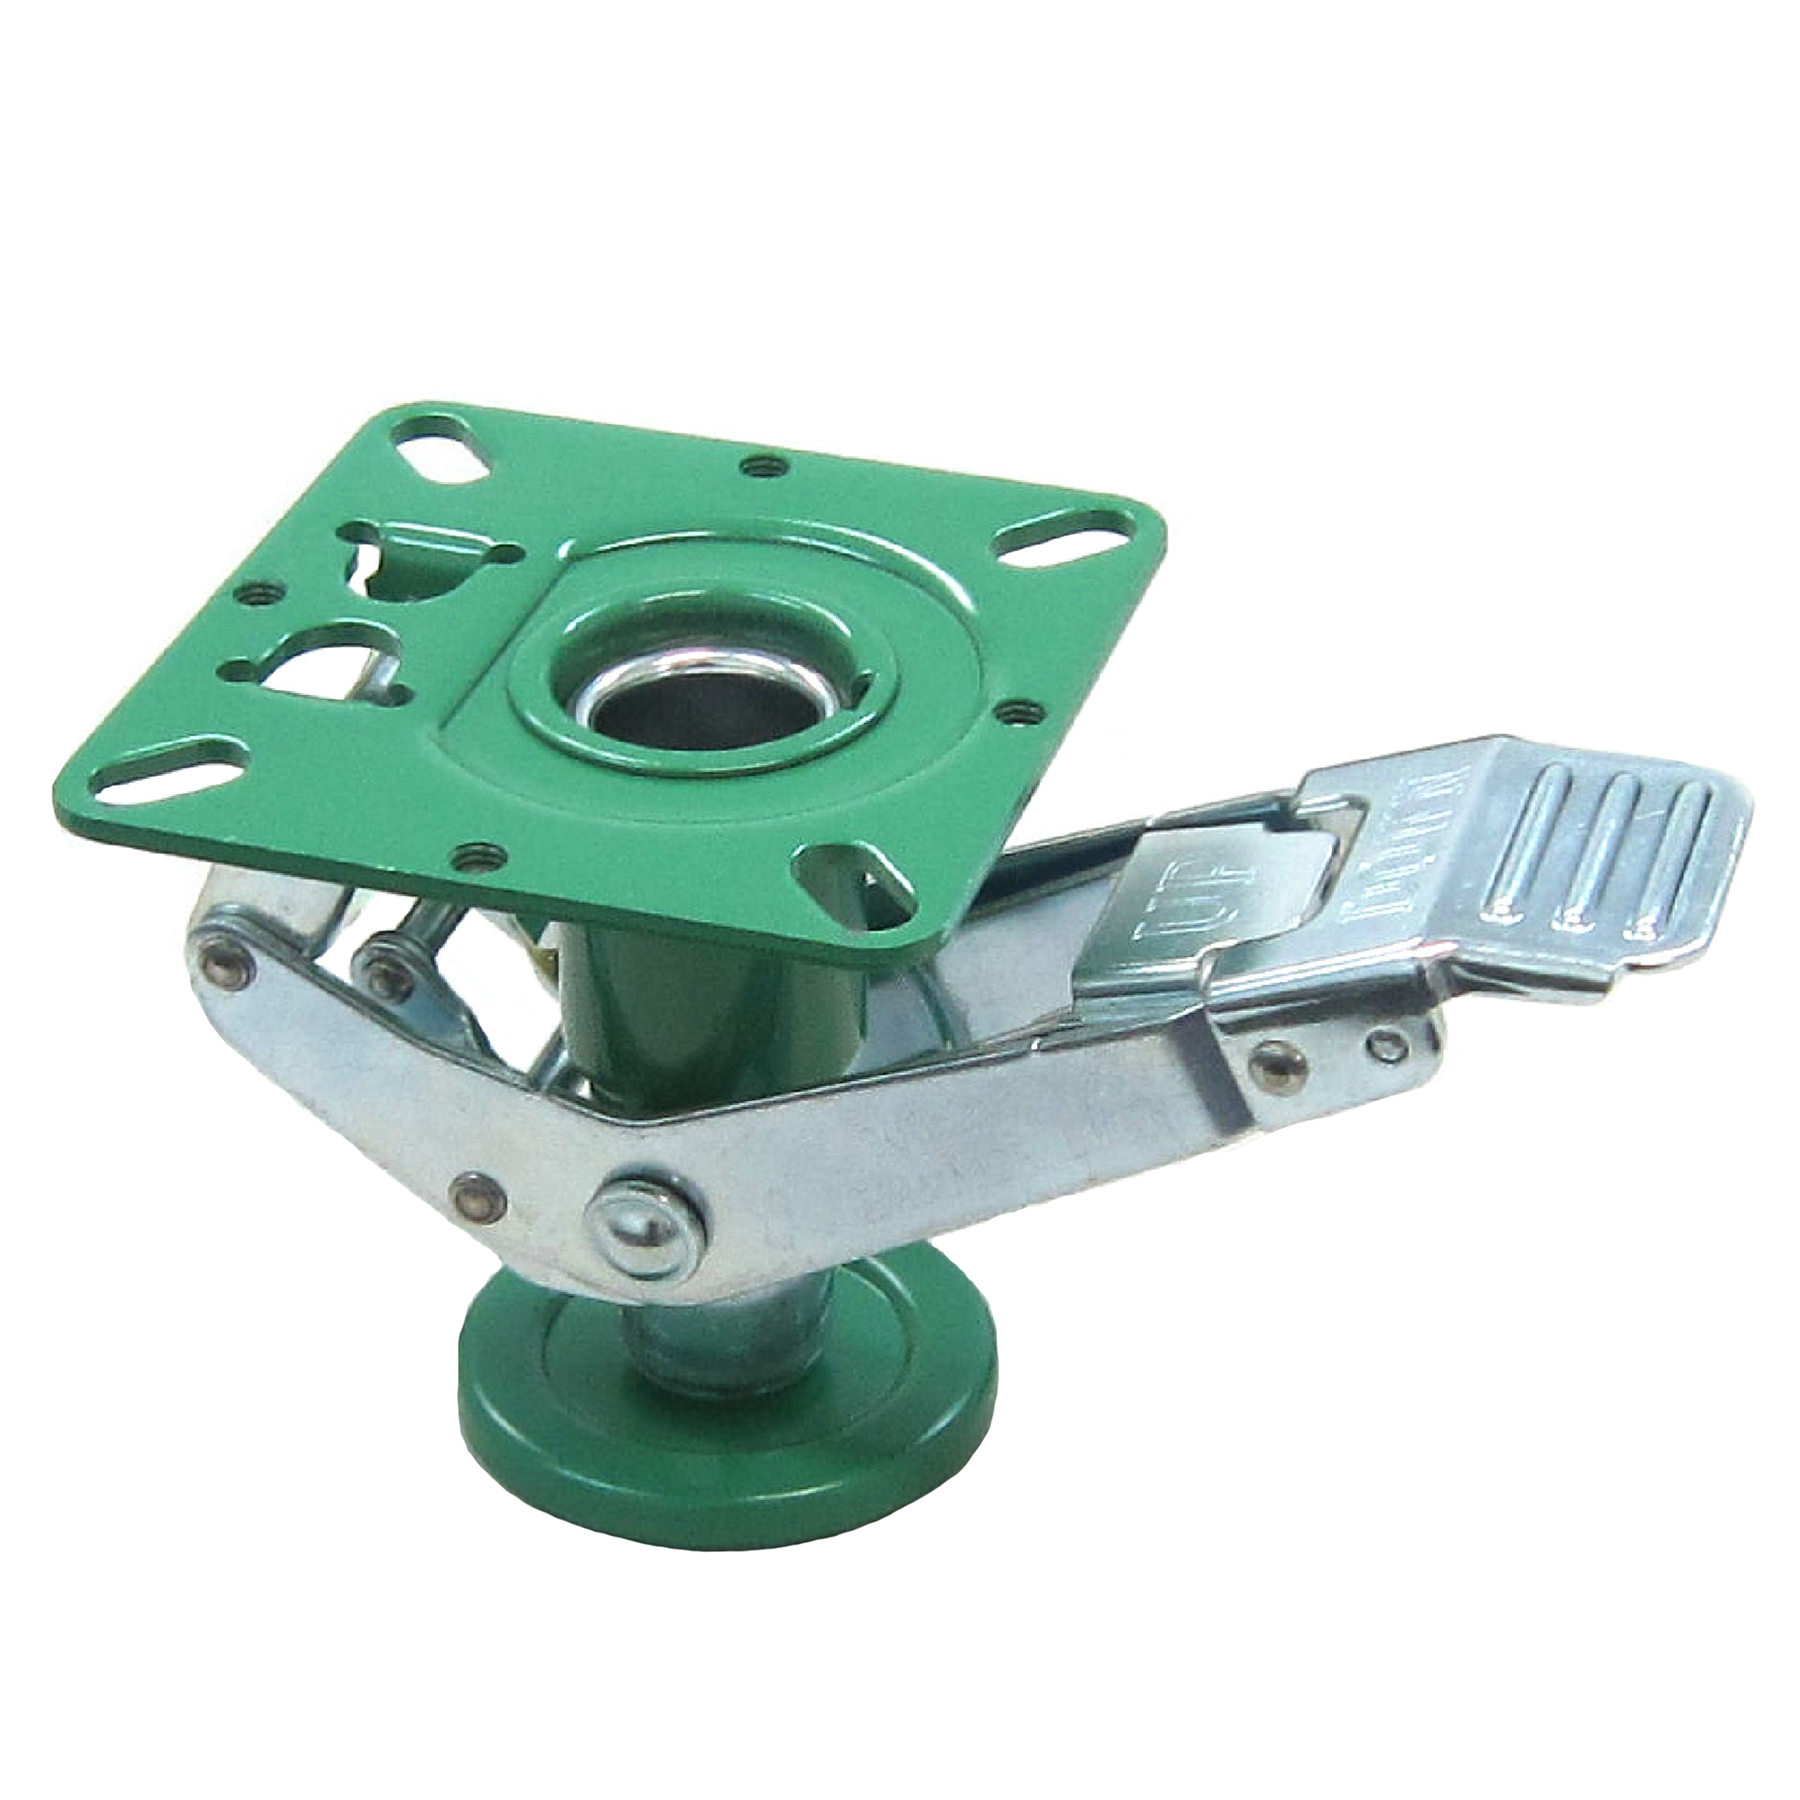 Caster Base Lock for Pipe Frame